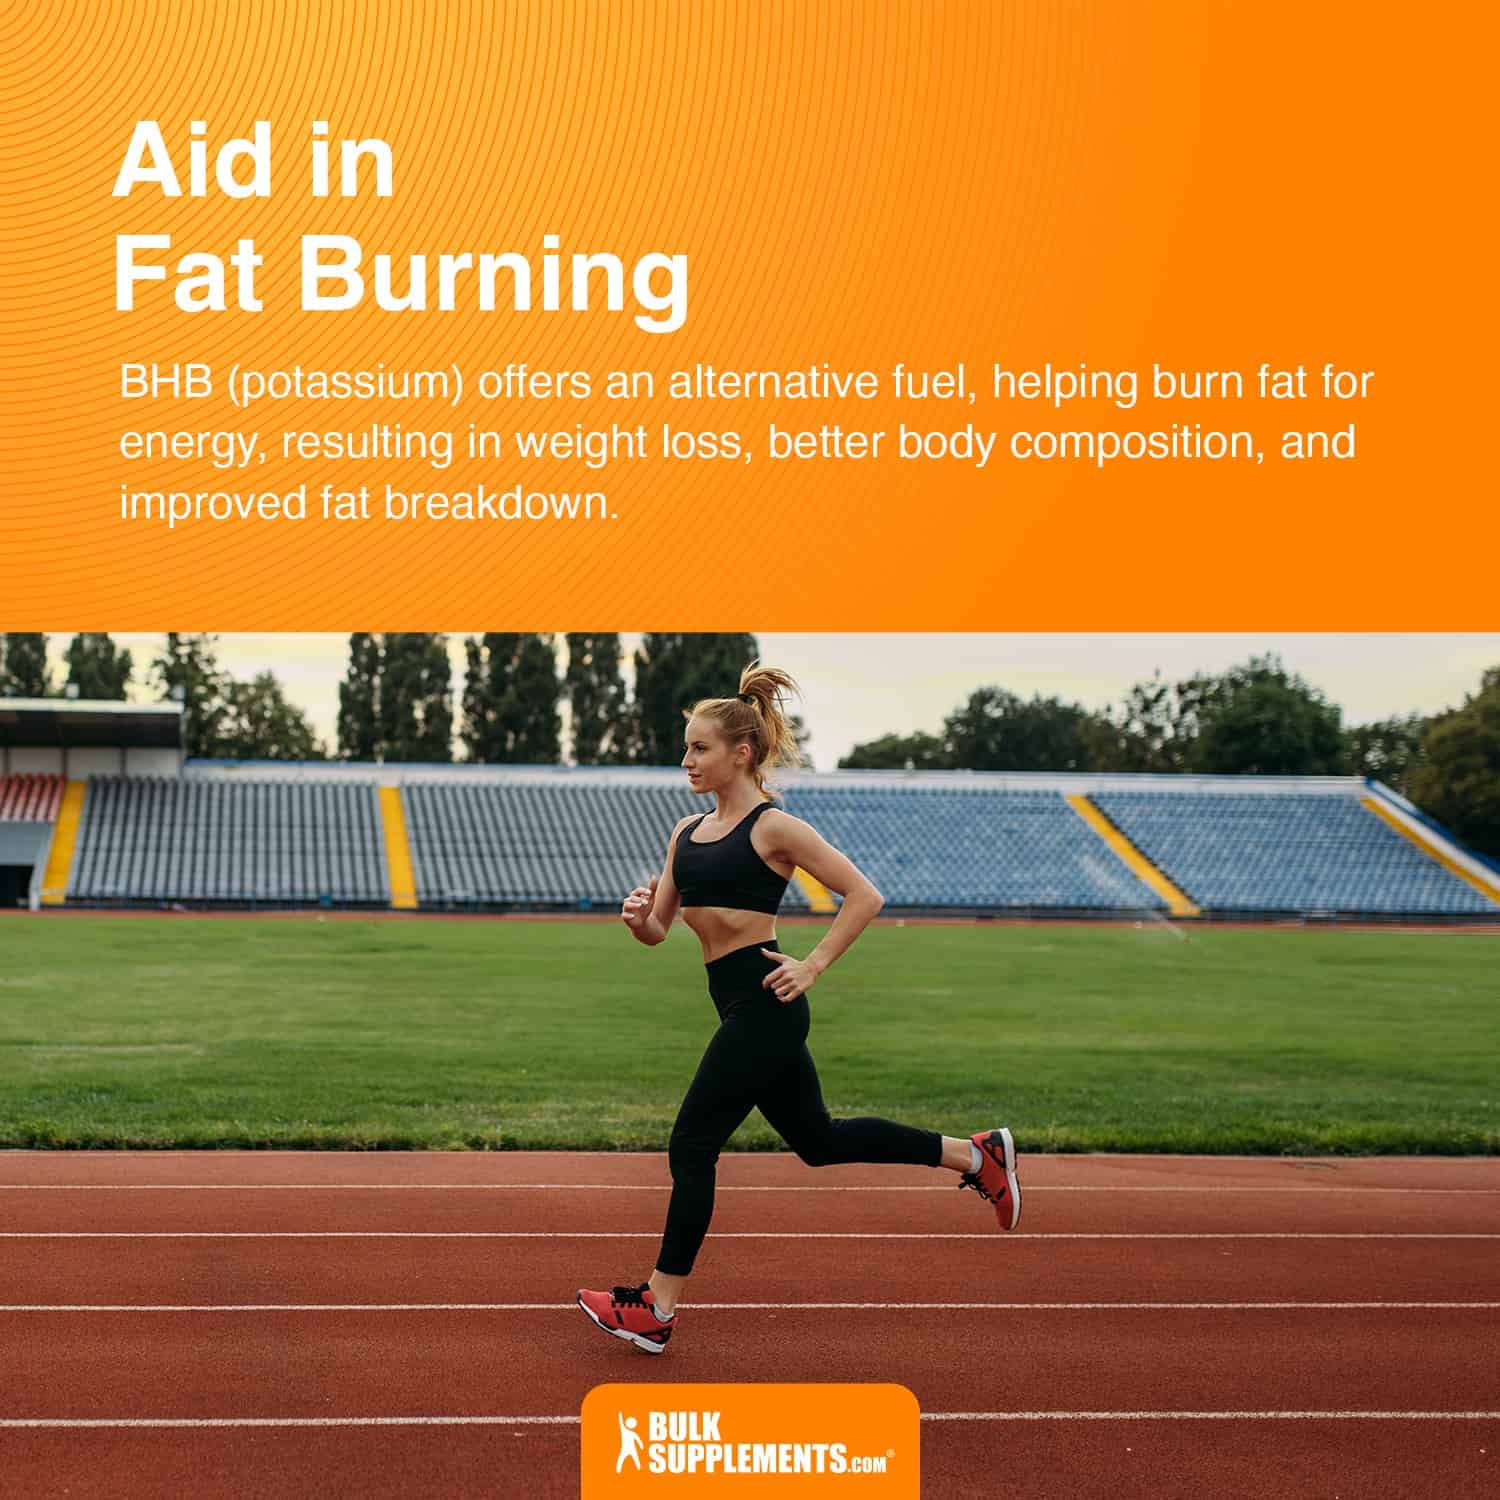 BHB (potassium) aid in fat burning